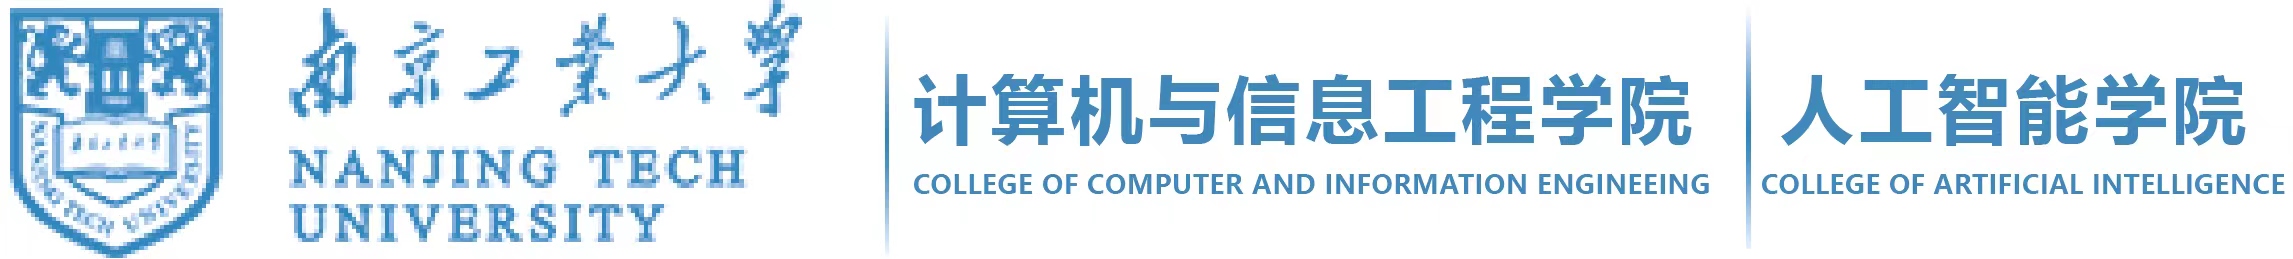 计算机与信息工程学院